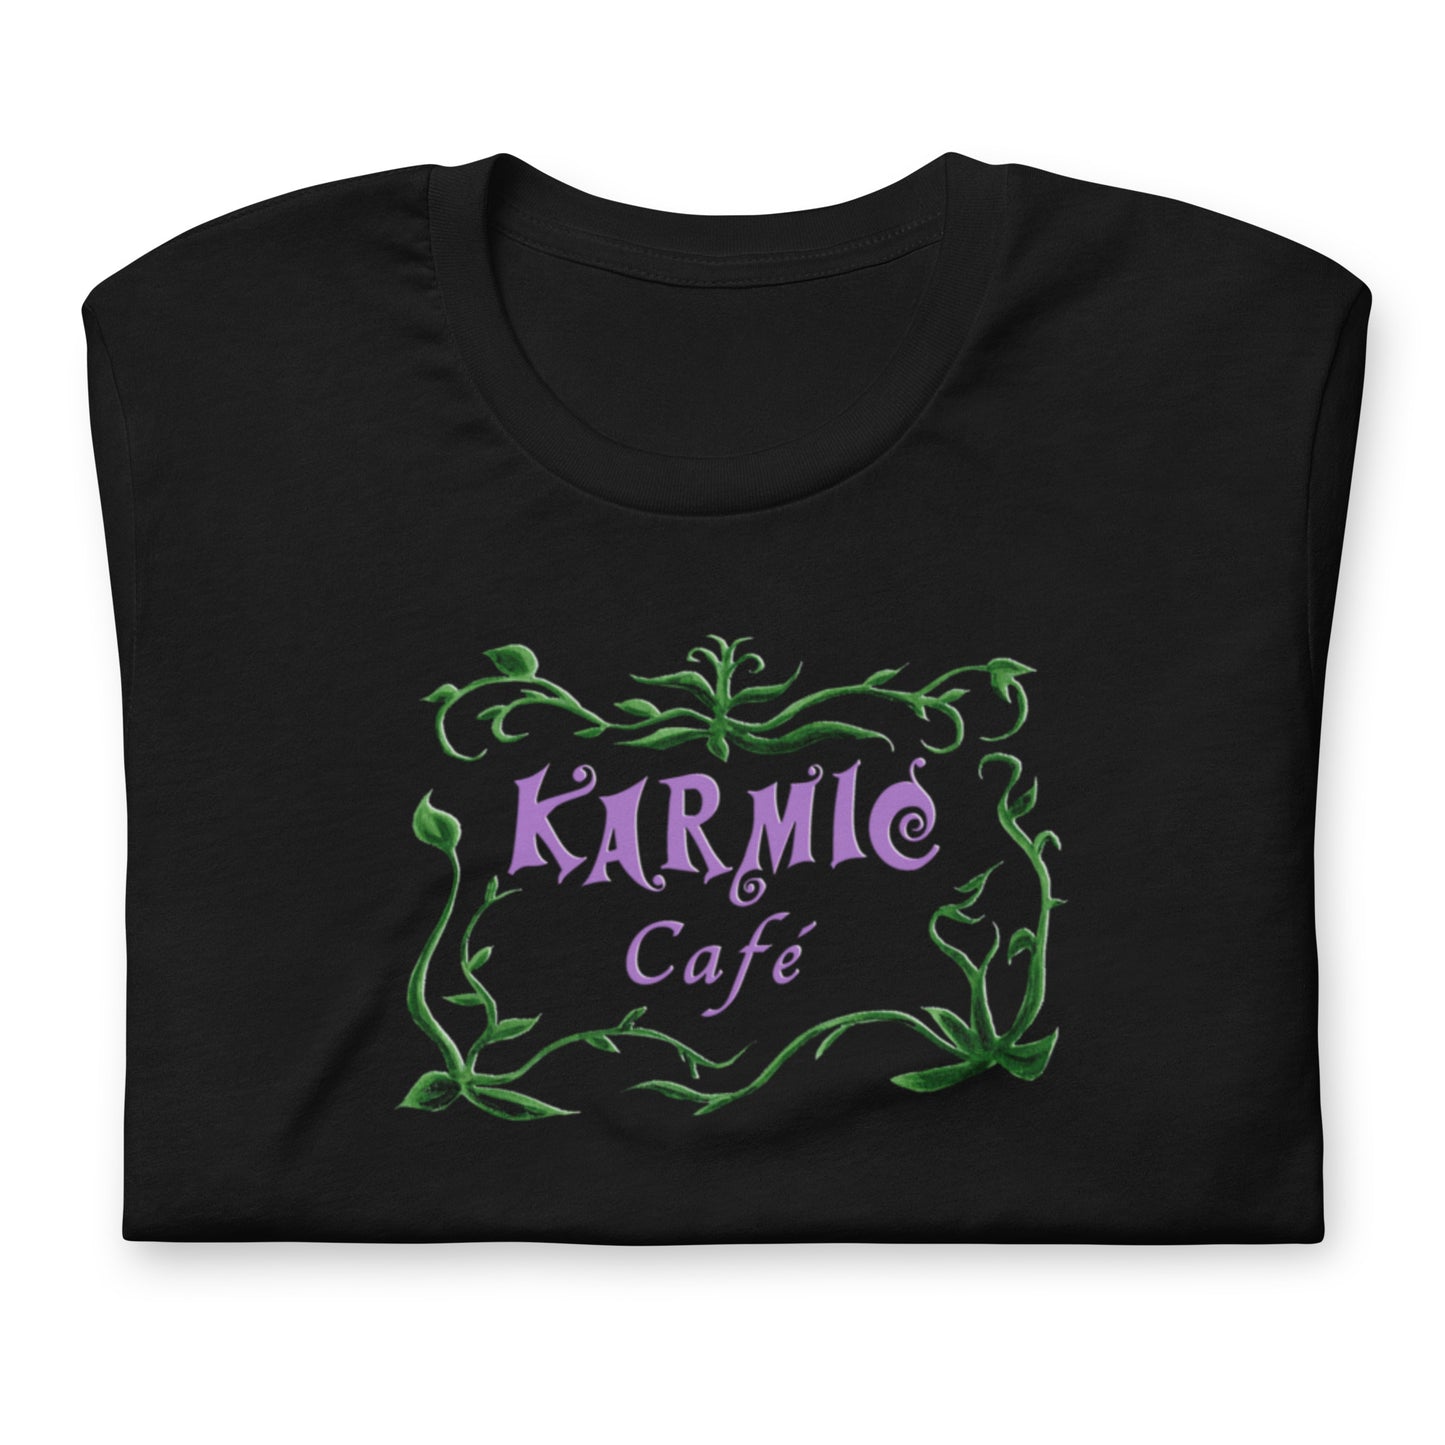 Super Comfy Fat Cat - Karmic Cafe T-shirt (black short-sleeved)